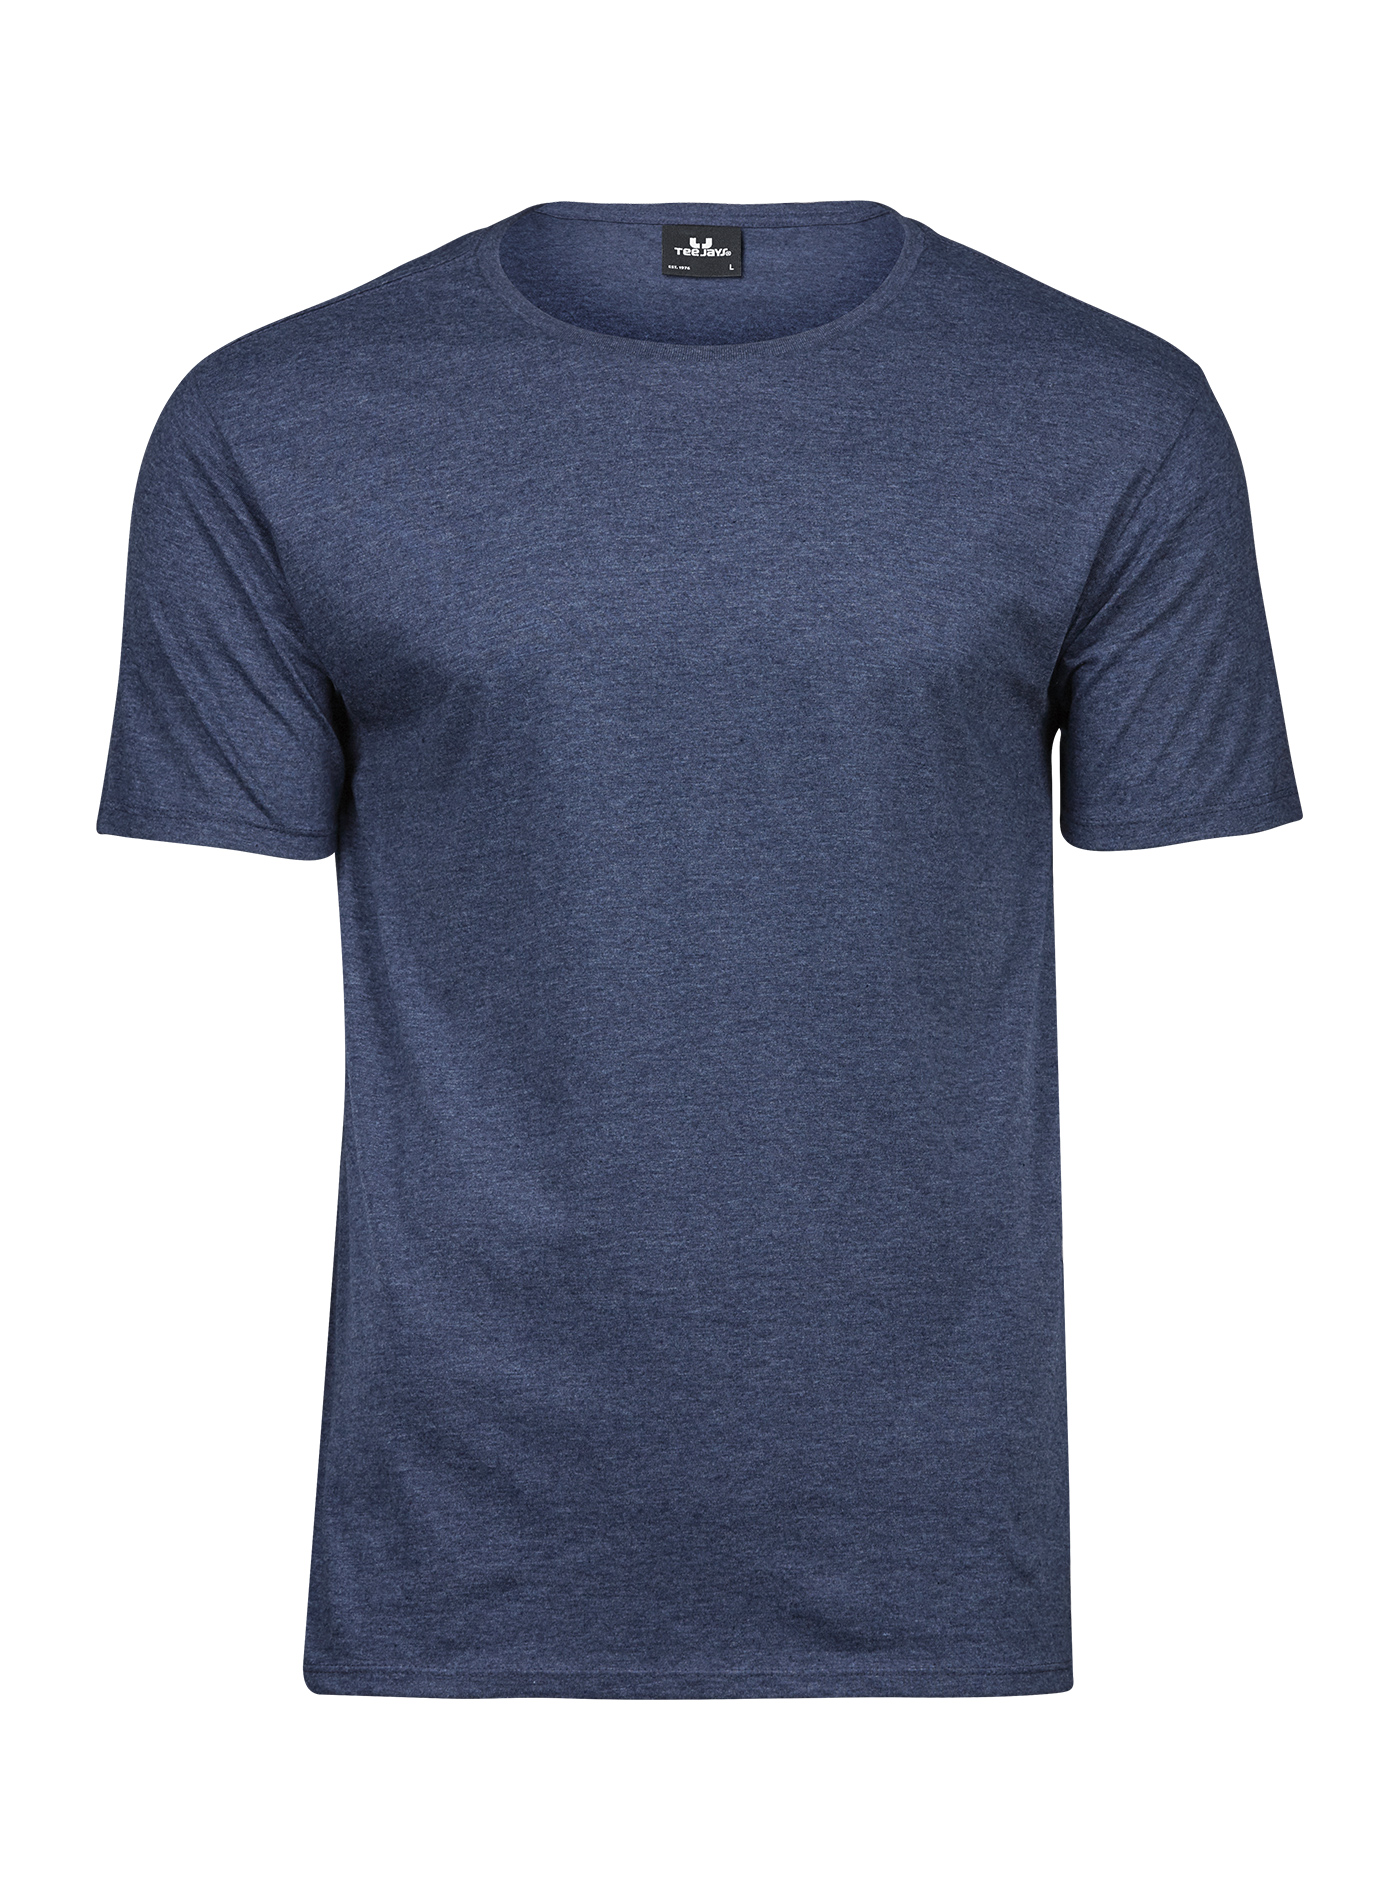 Pánské melírované tričko Tee Jays - Džínově modrá M